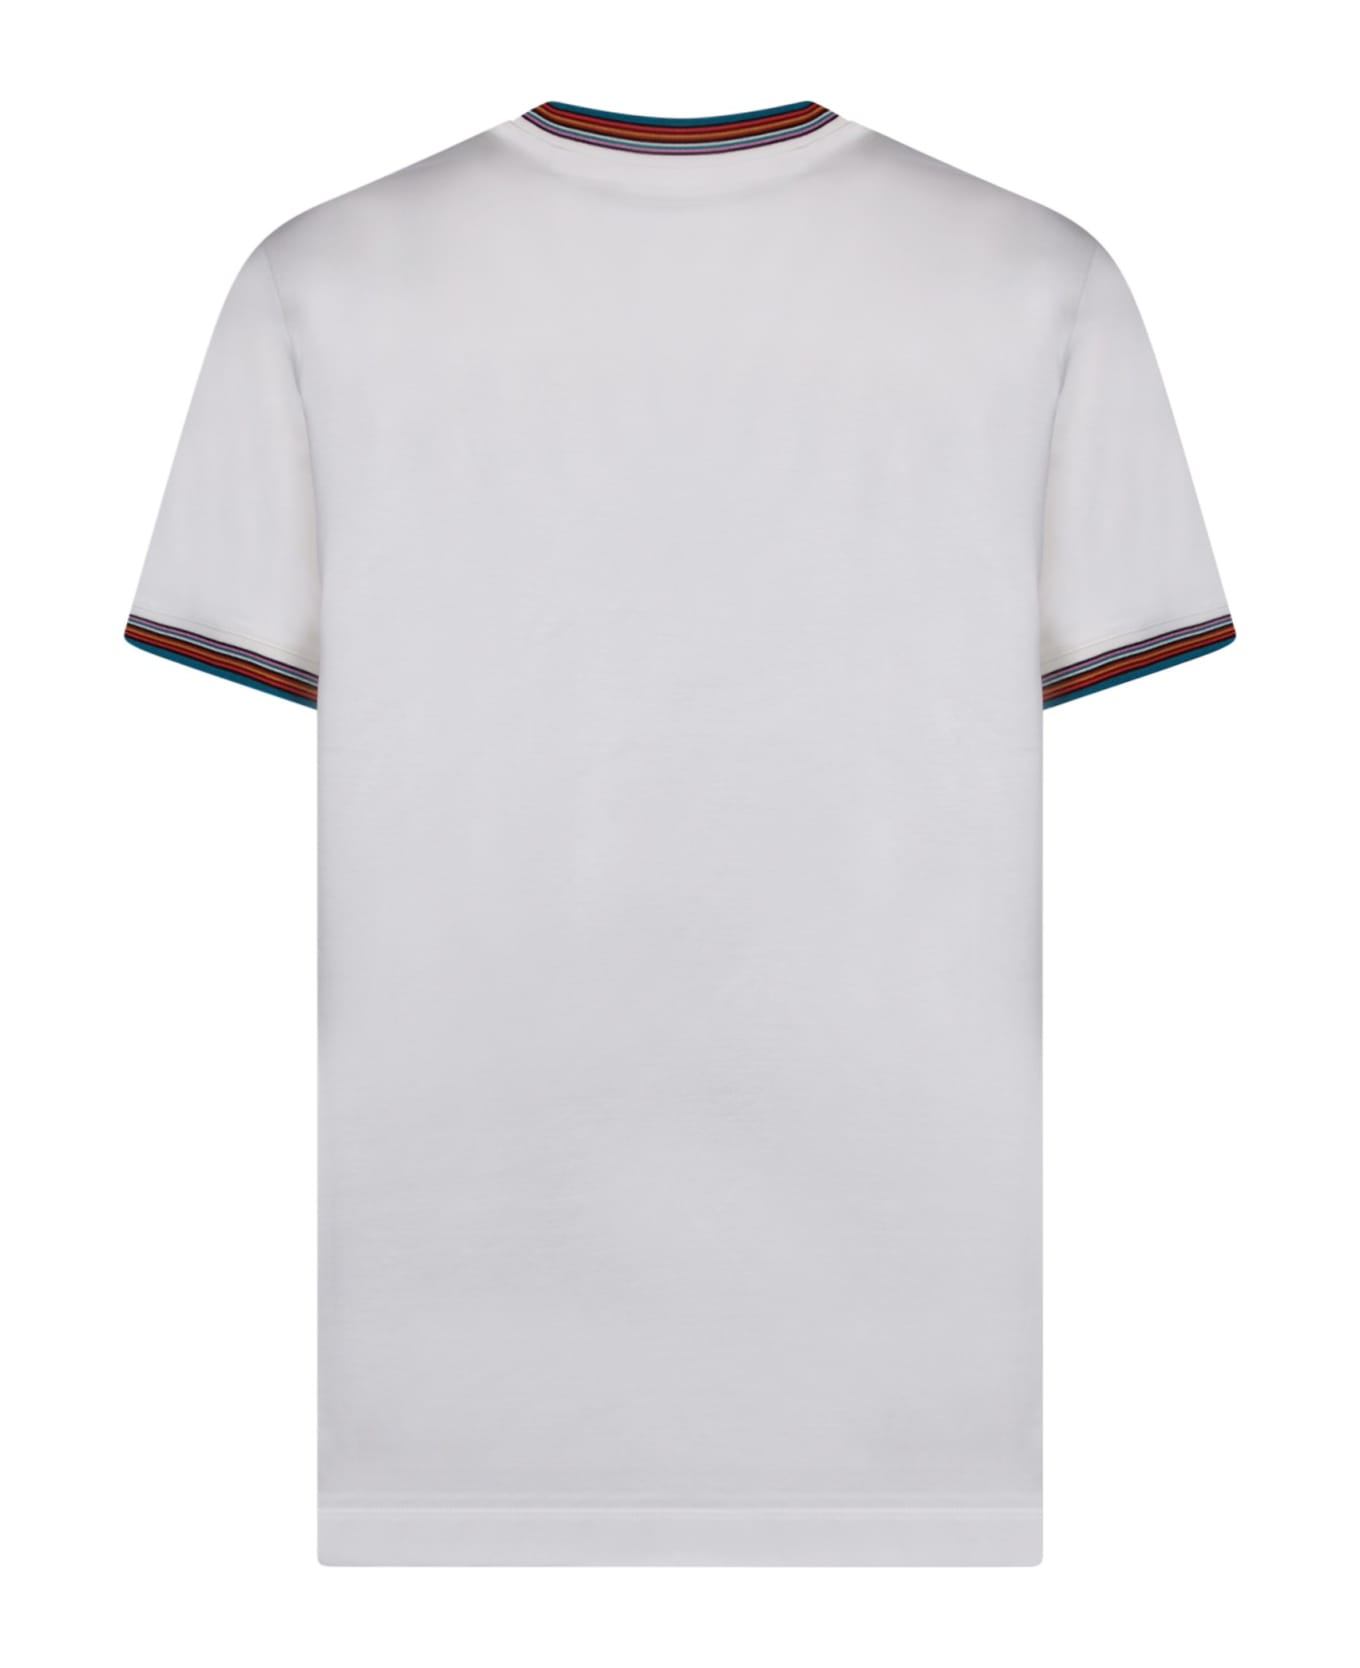 Paul Smith Roundneck White T-shirt - White